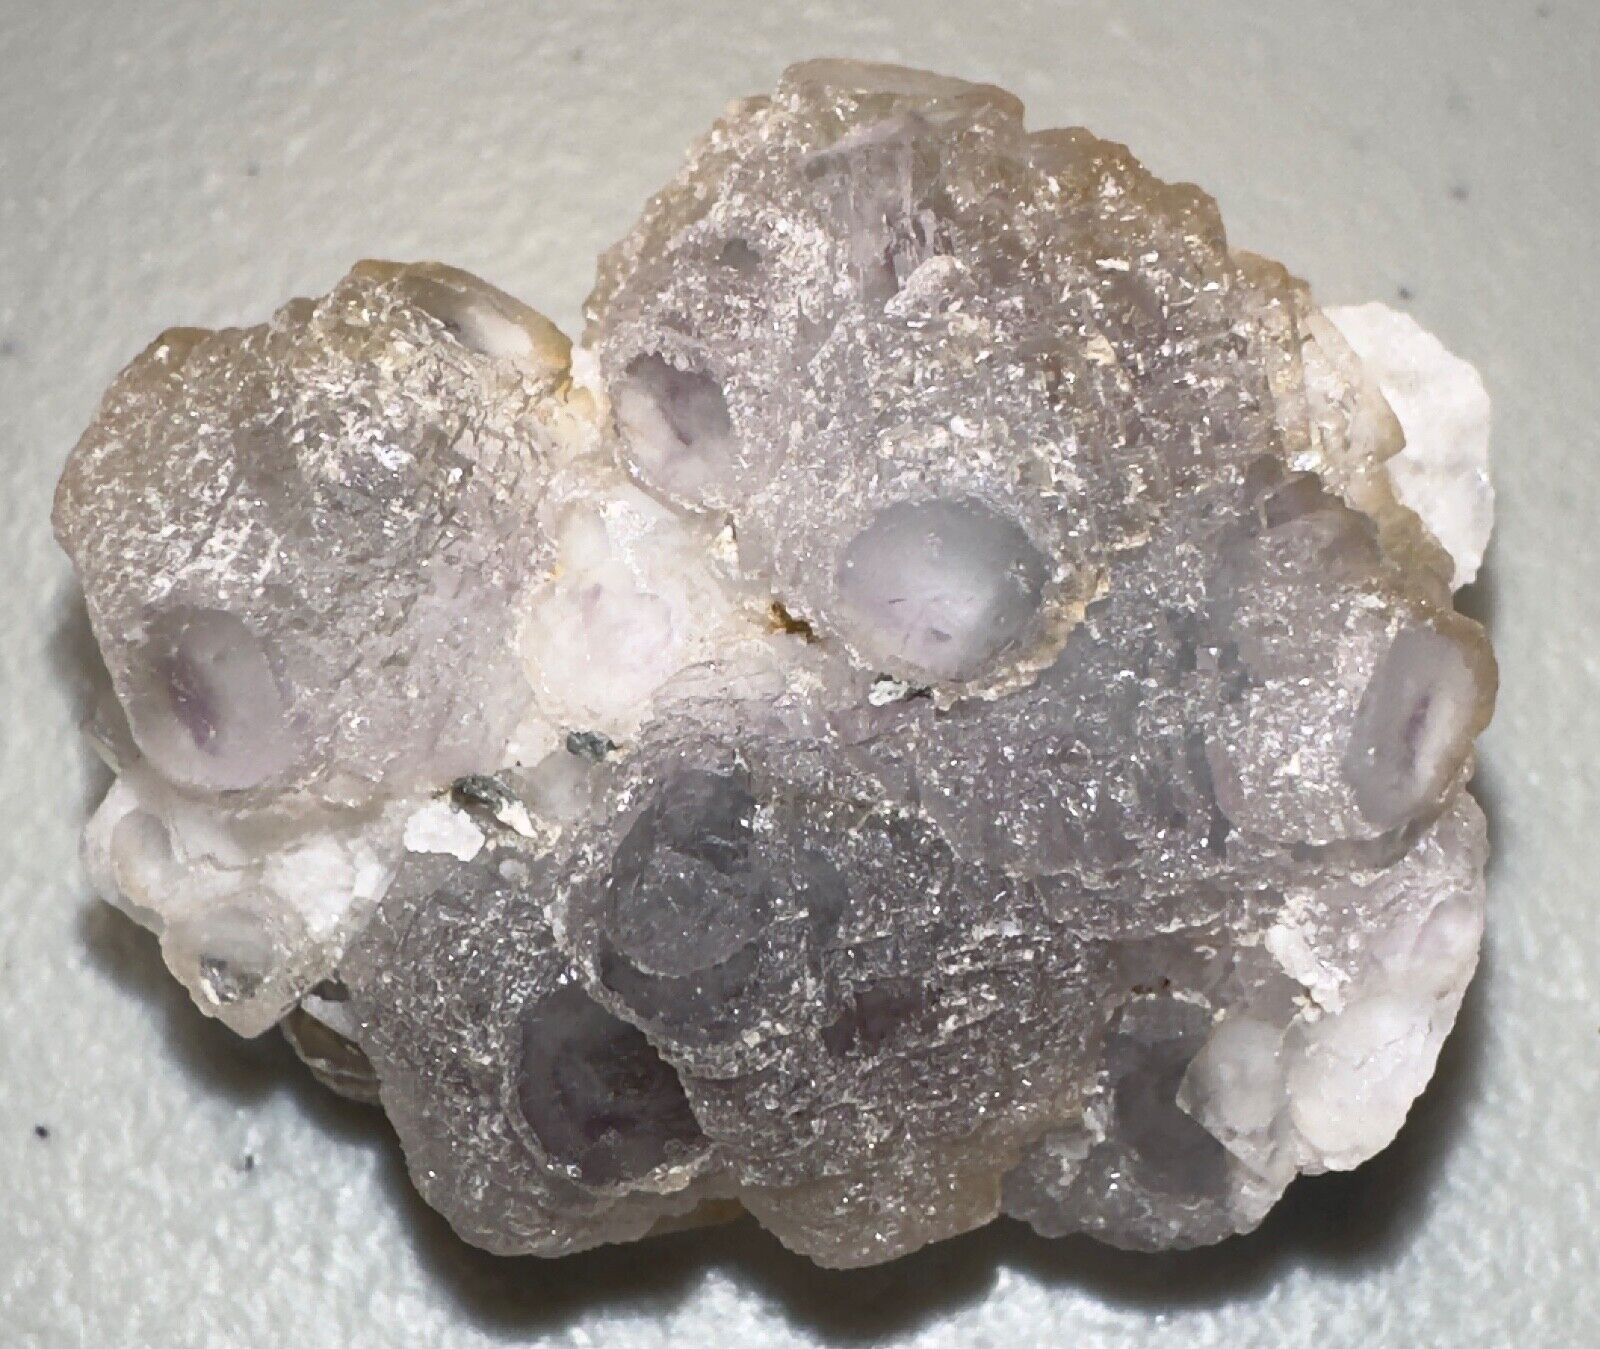 Eye of Inner Mongolia Fluorite /Candle Quartz Crystal,Metaphysical,Specimen